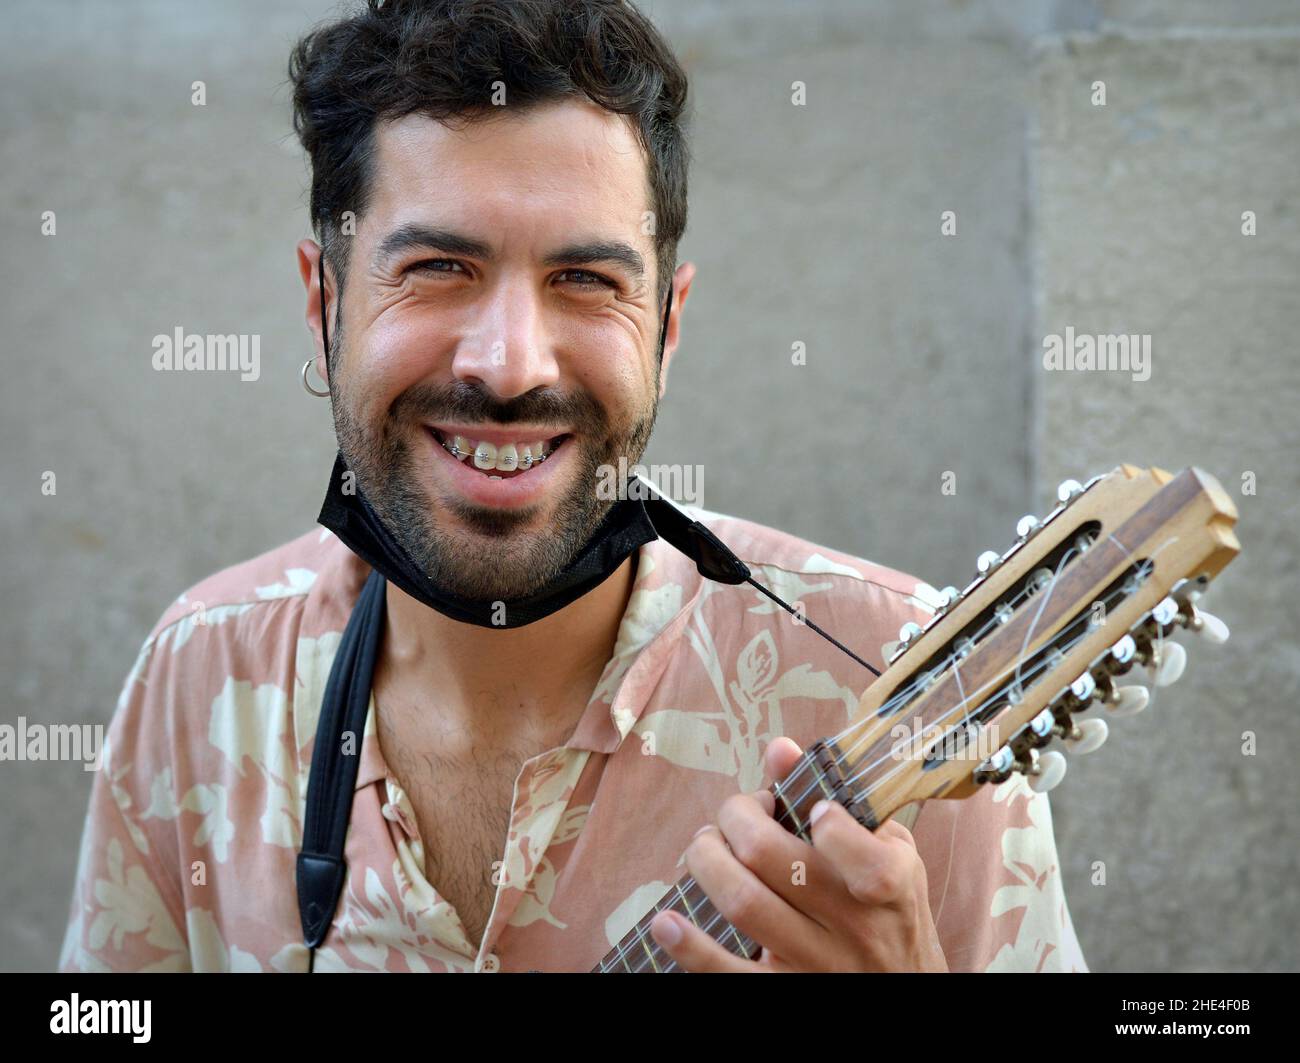 Bel giovane latino-americano con barba nera e maschera facciale sotto il  mento suona una piccola chitarra andina (charango) con dieci corde Foto  stock - Alamy